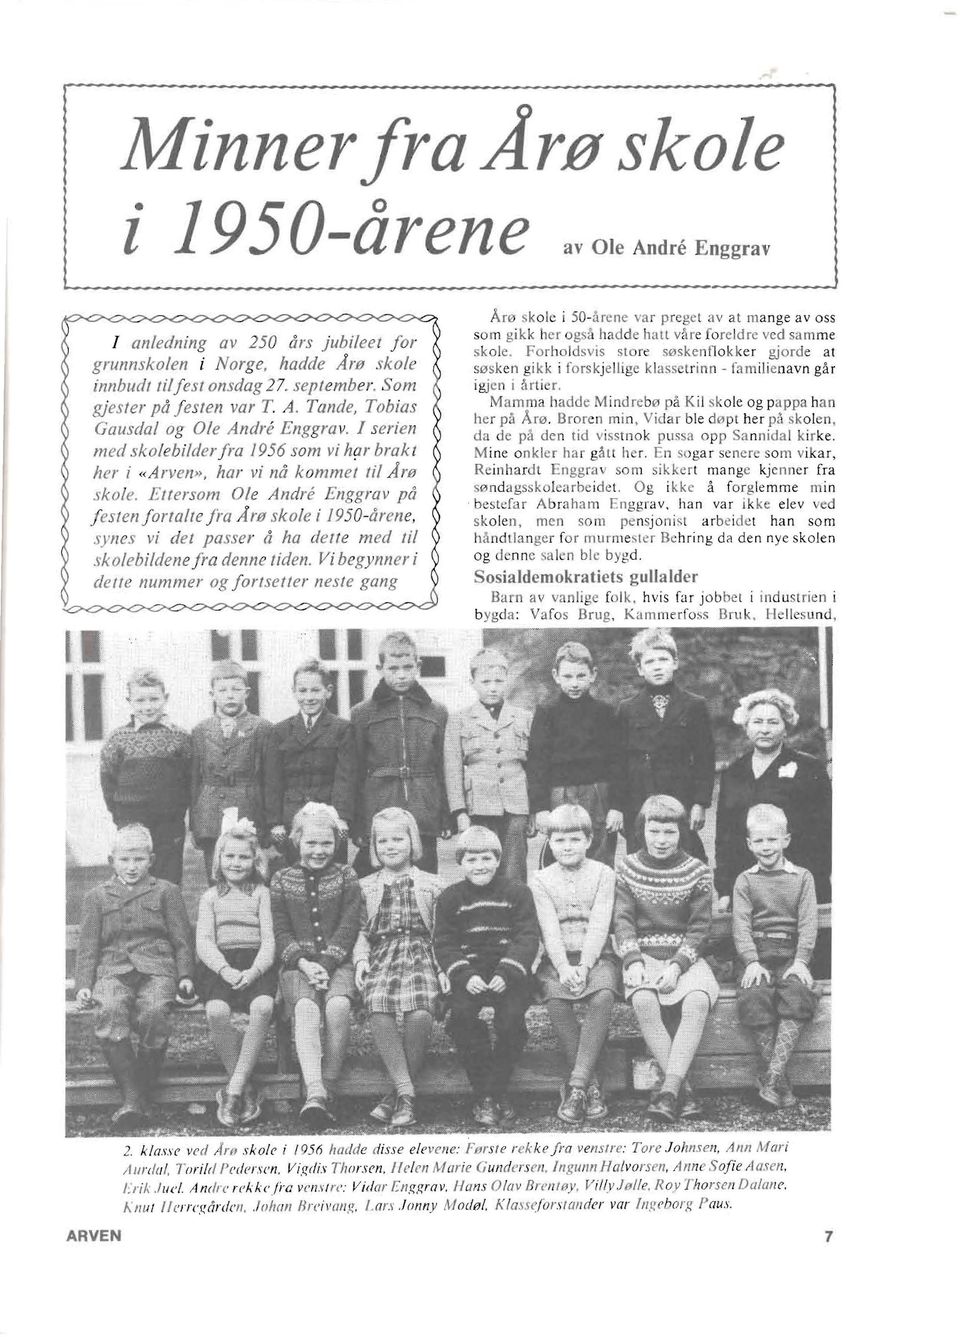 Eltersom Ole Andre Enggrav pa f esten for/alre Fa Are skole i 1950-arene, j synes vi del passer aha delle med IiI ( j skolebildene fra denne tiden.